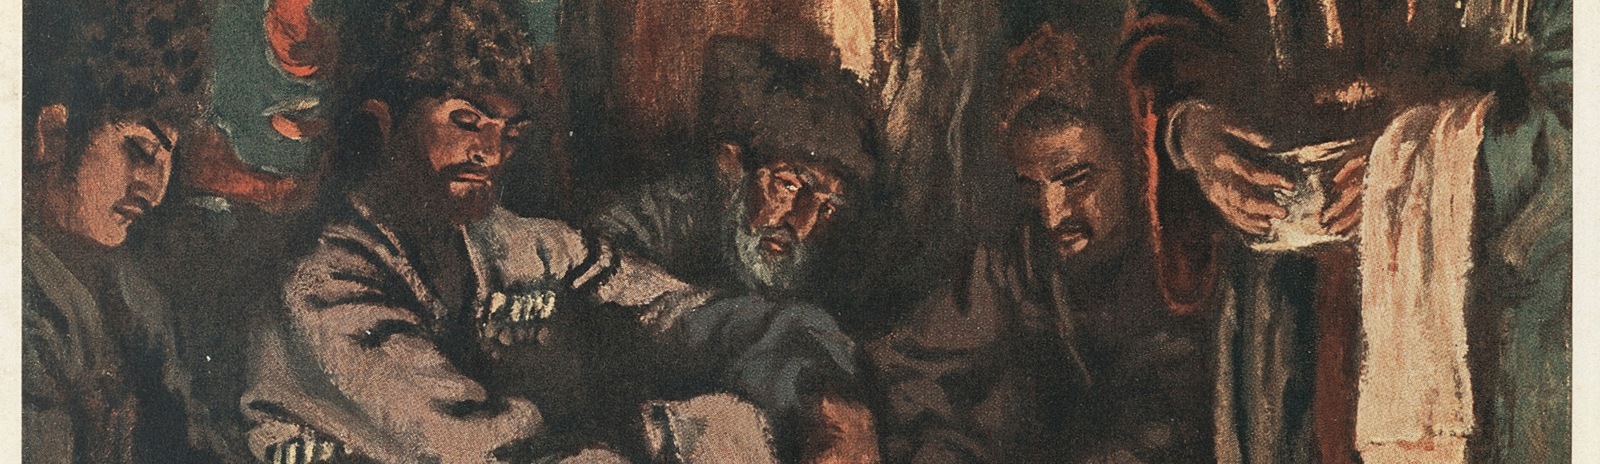 Фоновое изображение «Хаджи-Мурат» Л. Н. Толстого с иллюстрациями Е. Е. Лансере